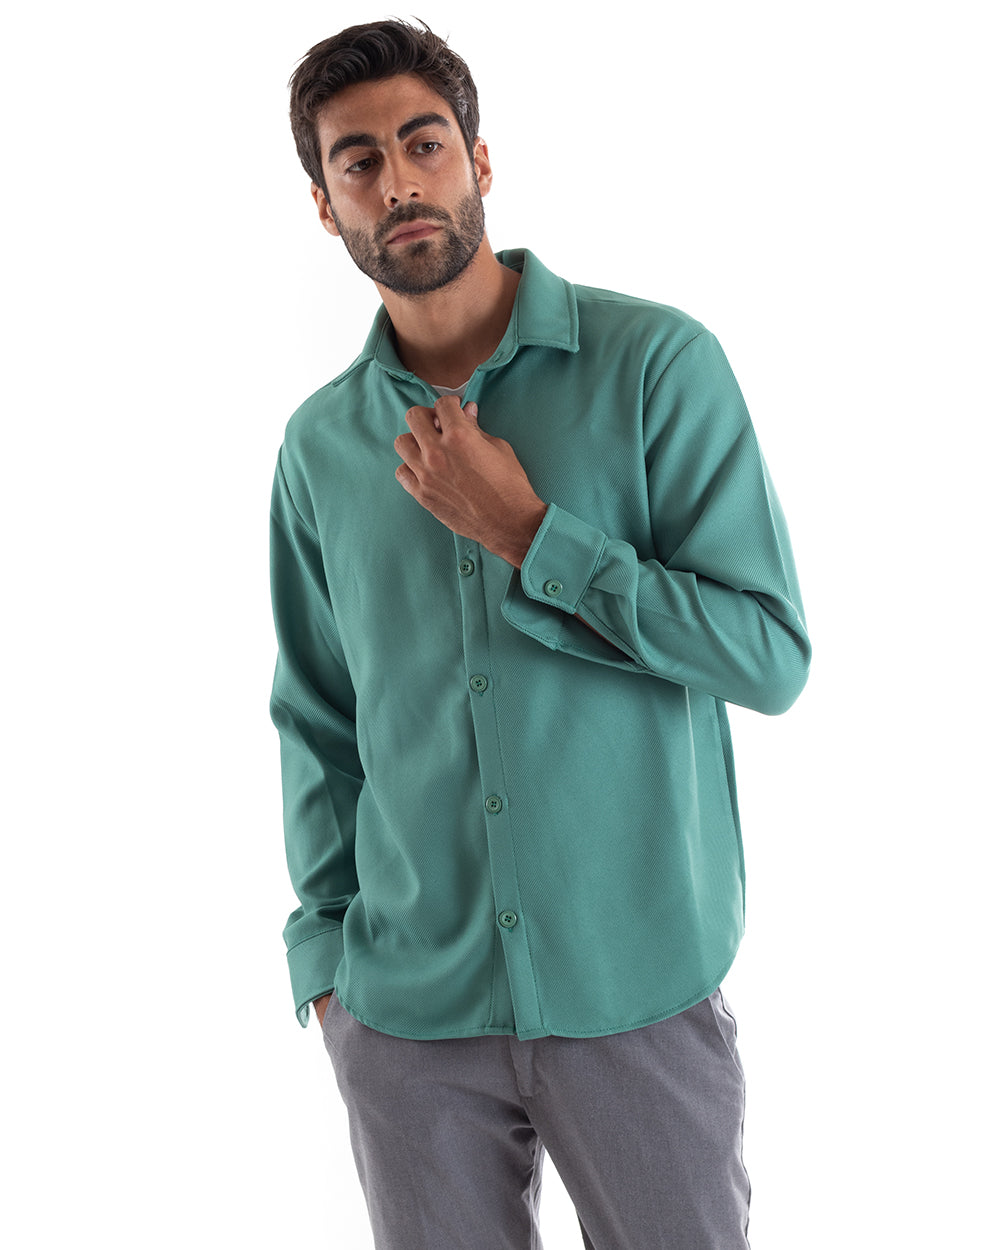 Camicia Uomo Con Colletto Manica Lunga Cotone Tinta Unita Petrolio GIOSAL-C2463A